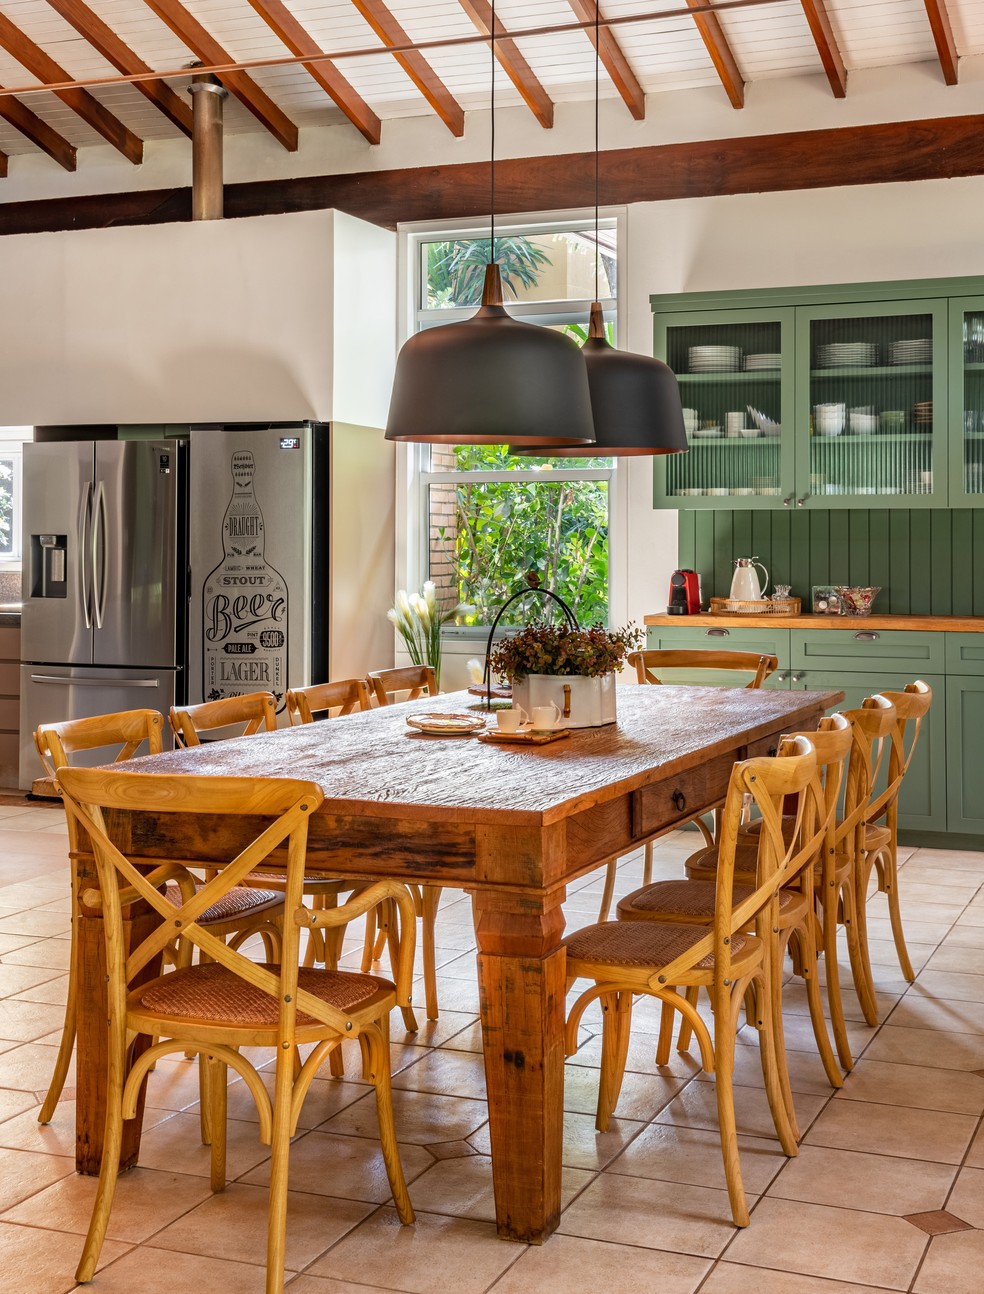 Móveis rústicos e estilo provençal ditam a decoração da área gourmet em casa de Campinas, no interior de São Paulo — Foto: Fávaro Junior